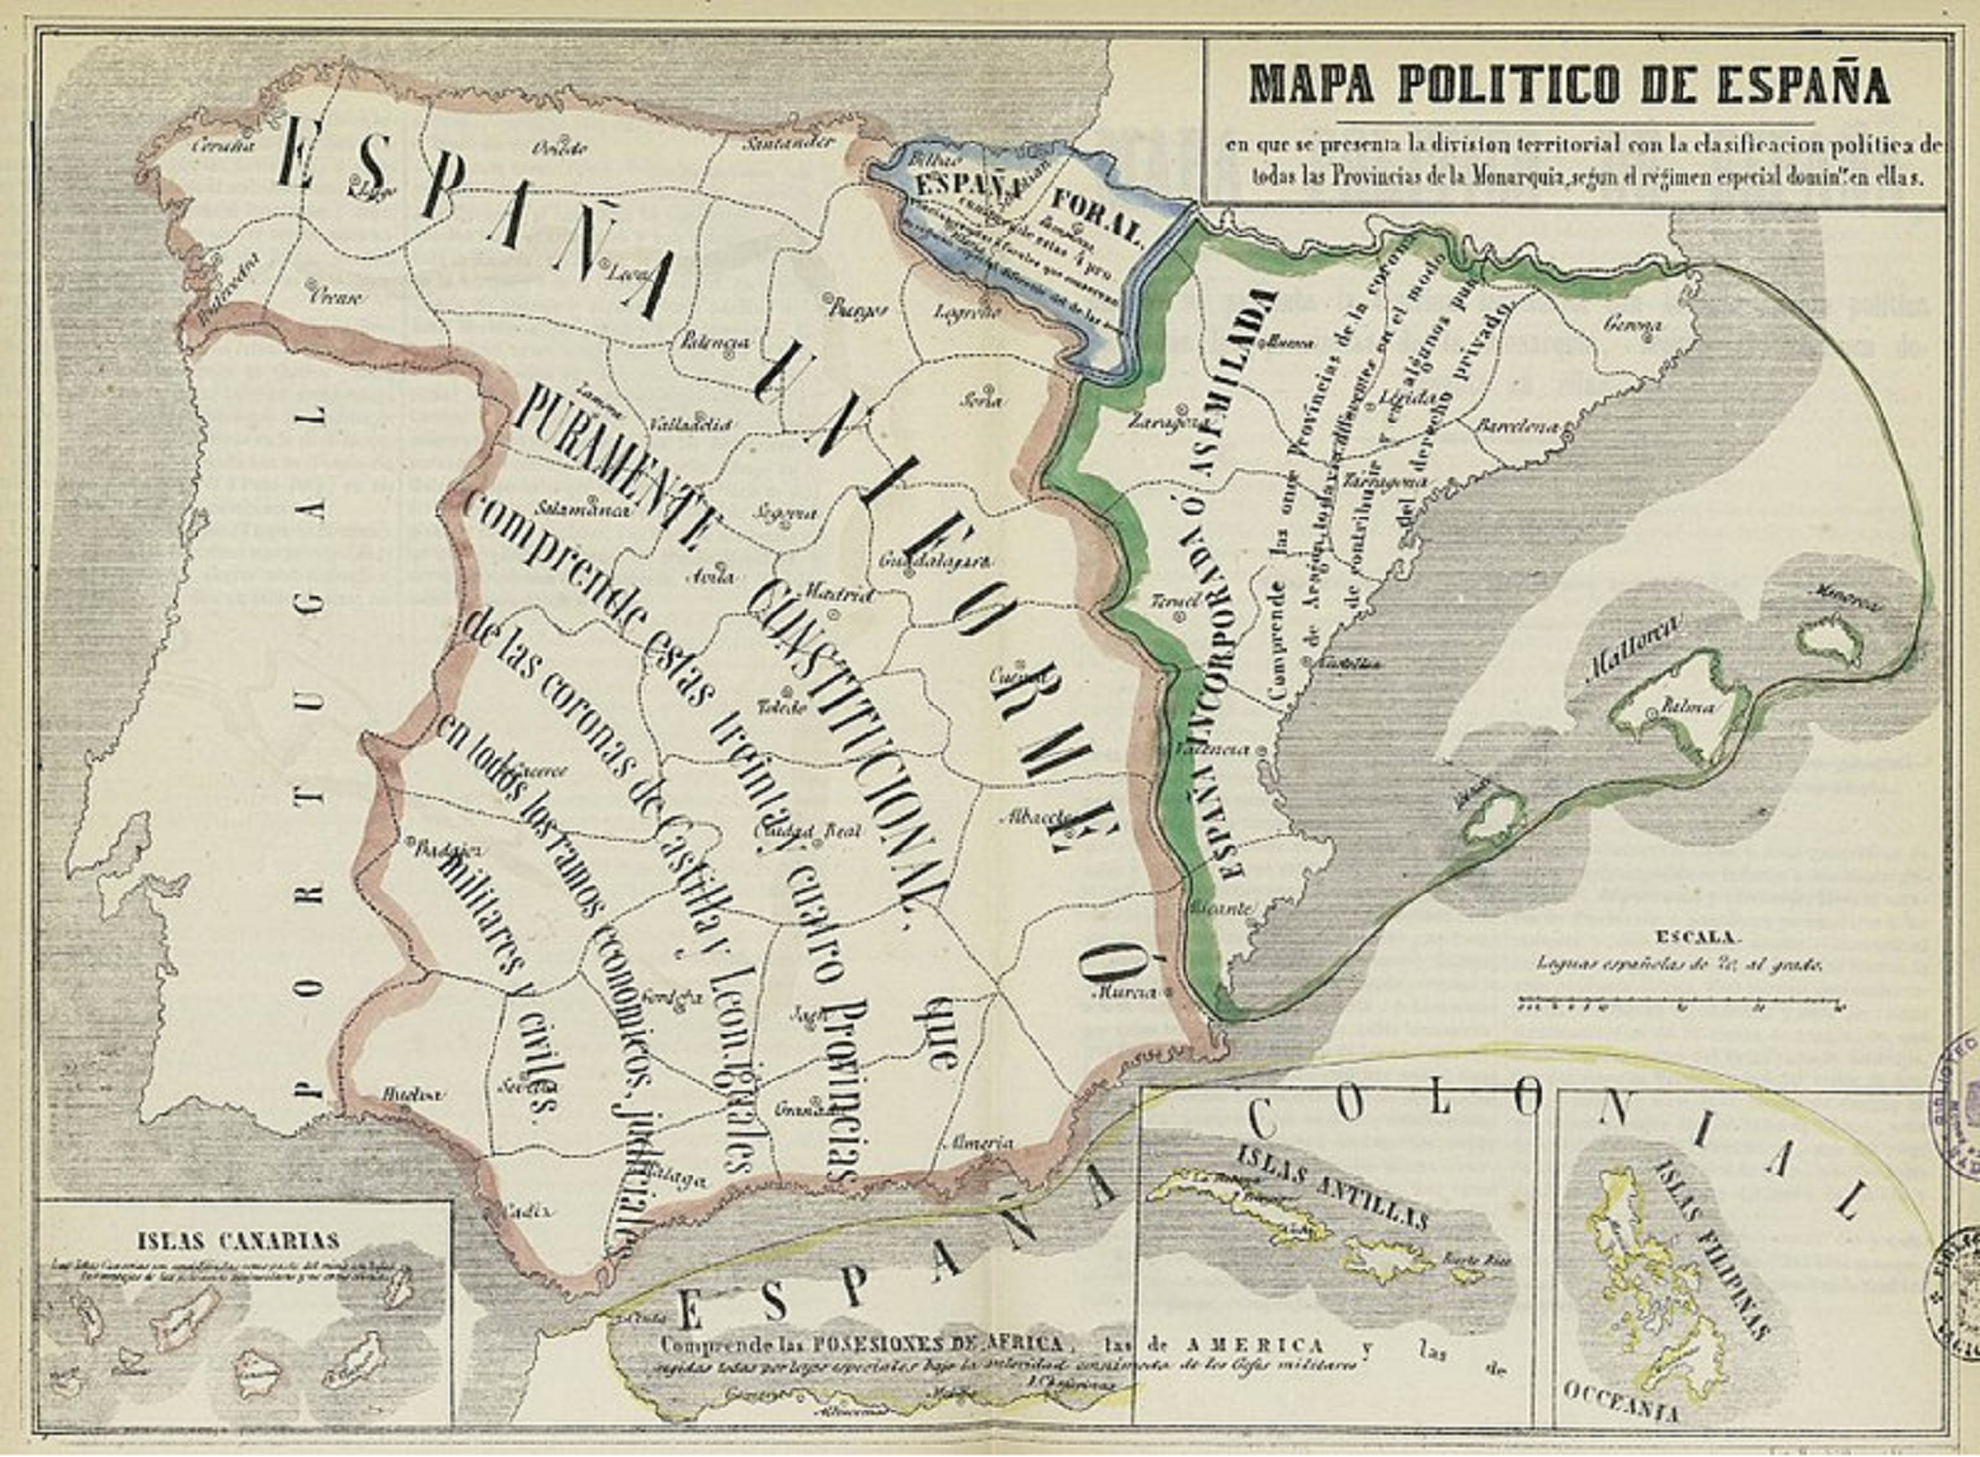 Mapa político de España (1850) / Fuente: Biblioteca Nacional de España